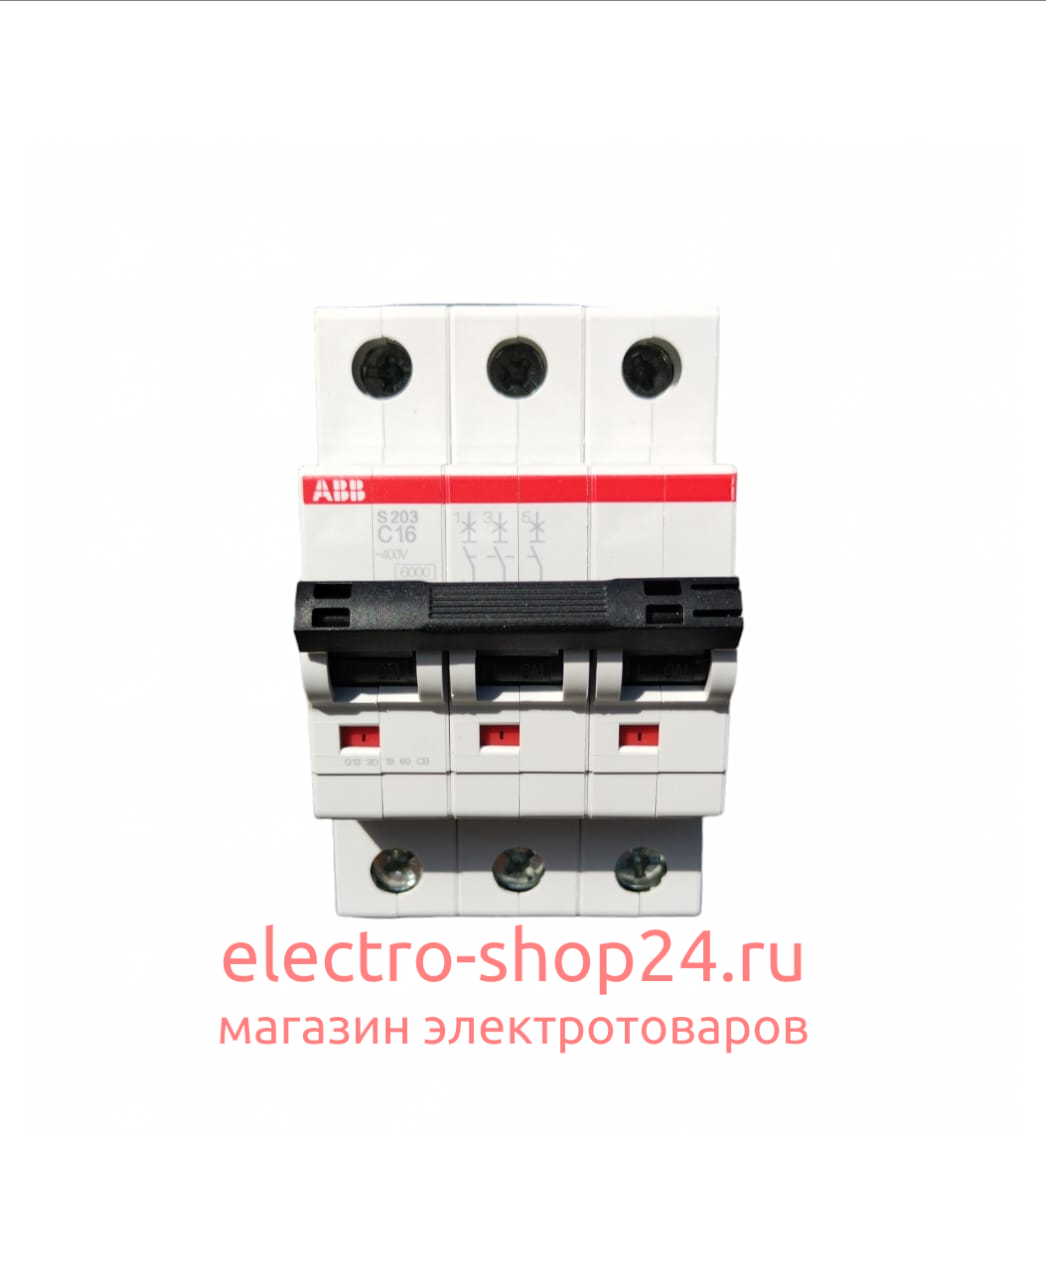 S203 C16 Автоматический выключатель 3-полюсный 16А 6кА (хар-ка C) ABB 2CDS253001R0164 2CDS253001R0164 - магазин электротехники Electroshop